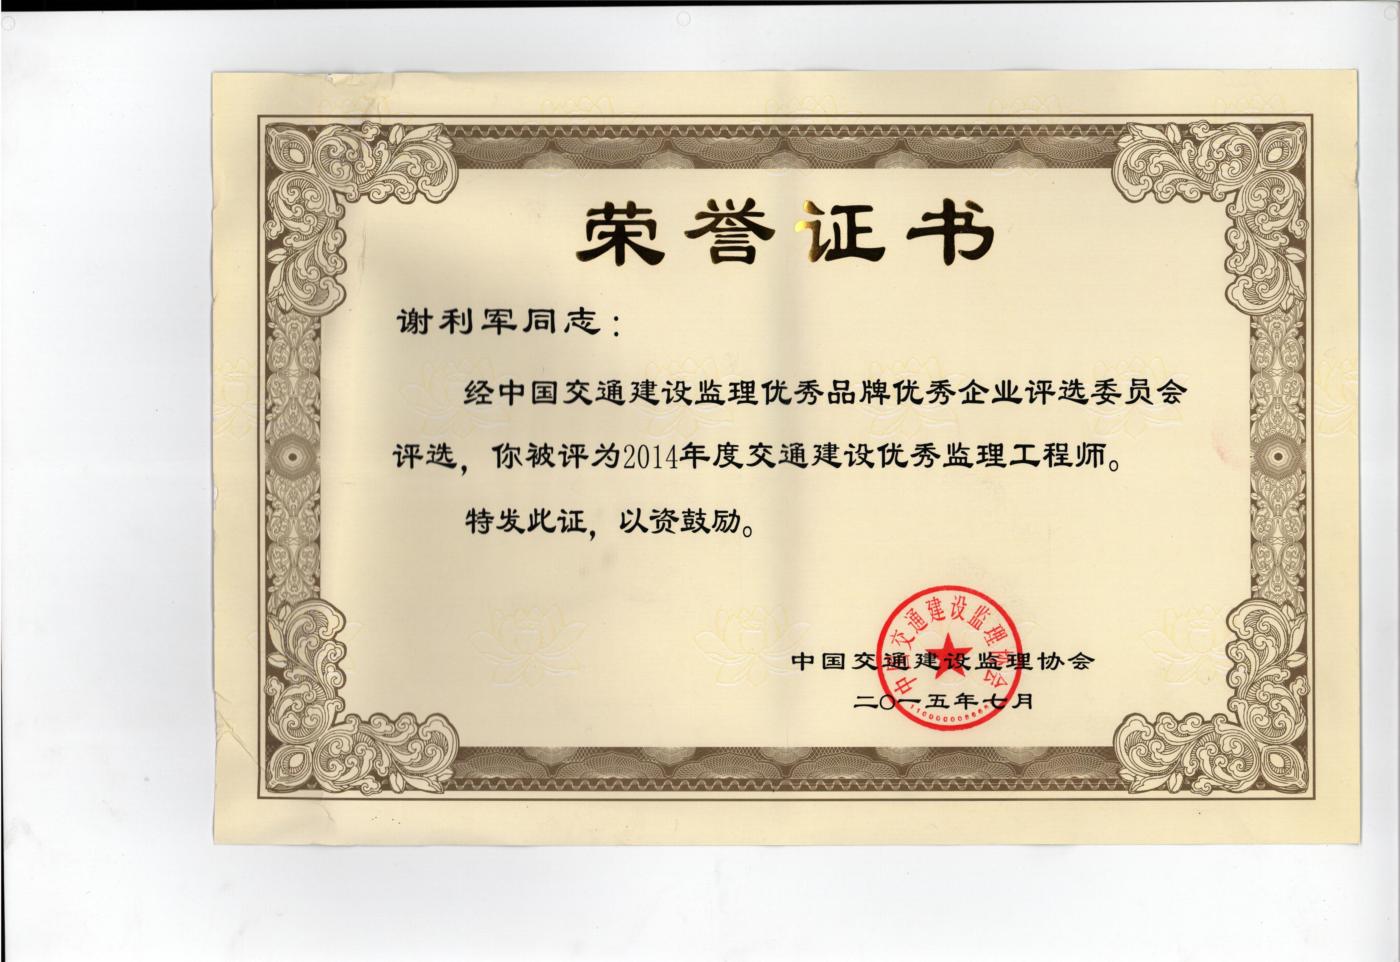 2014年度中国交通建设监理协会优秀监理工程师奖 (1400x962).jpg